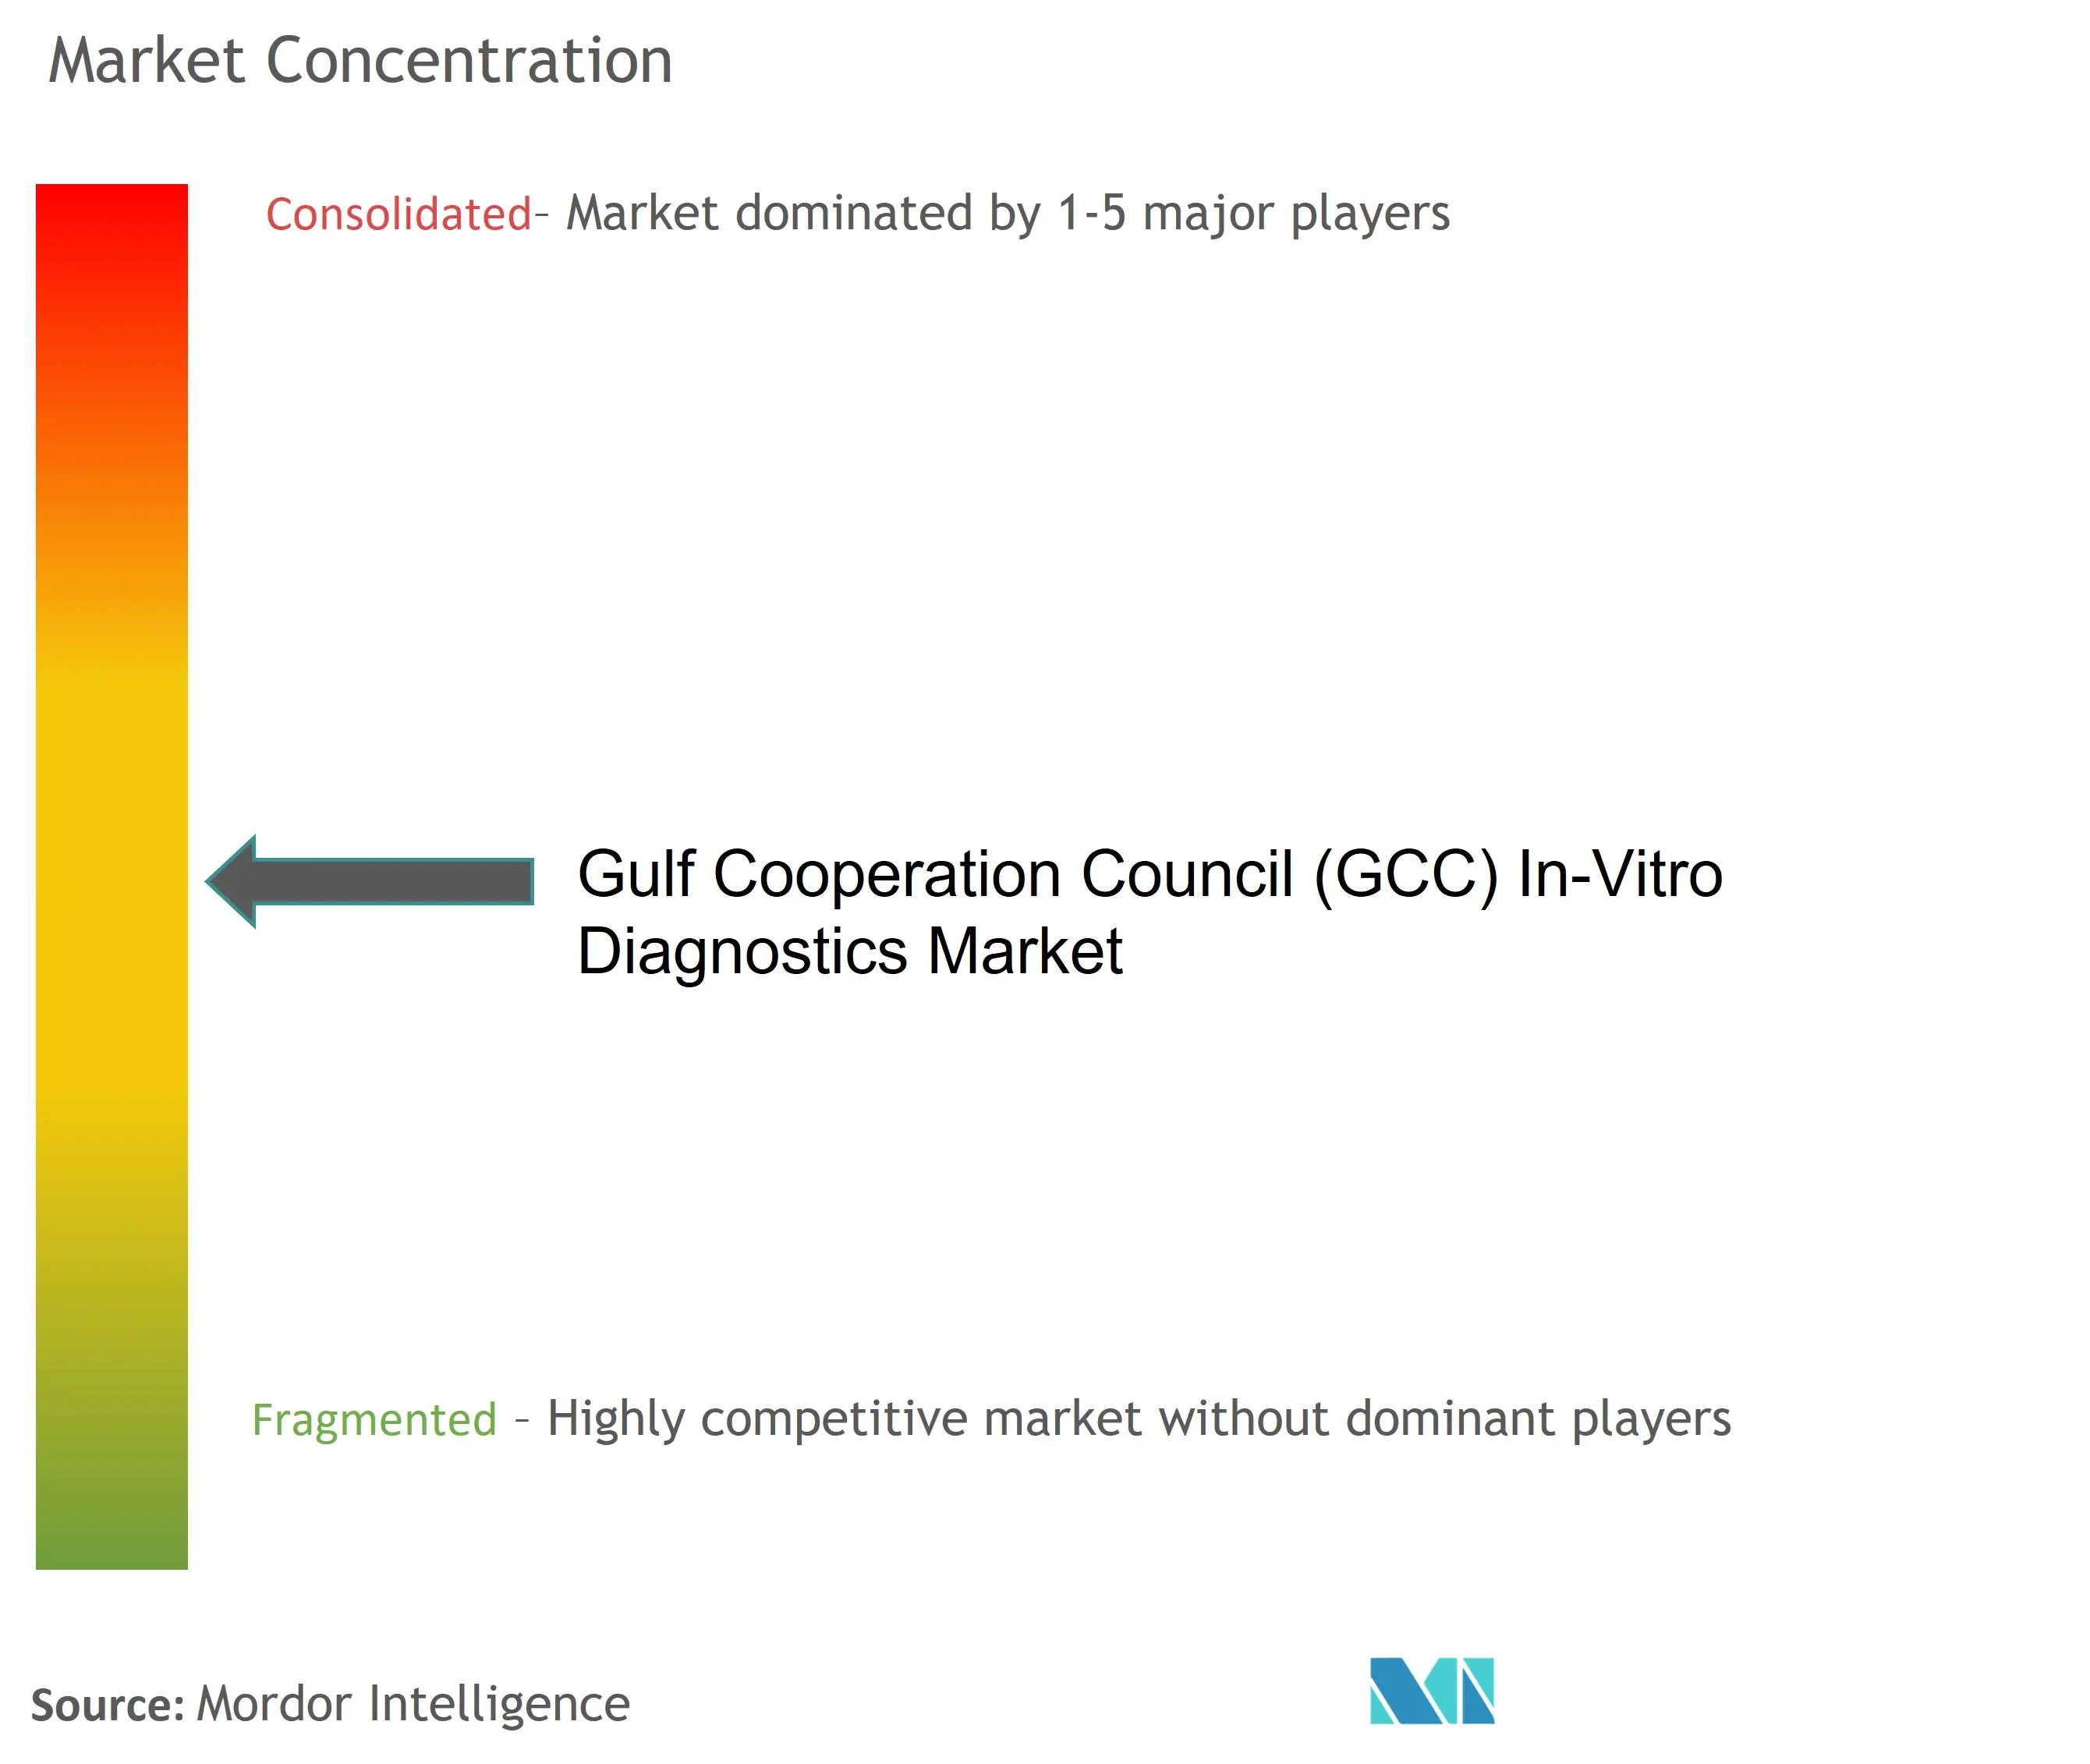 GCC In-Vitro Diagnostics Market Concentration